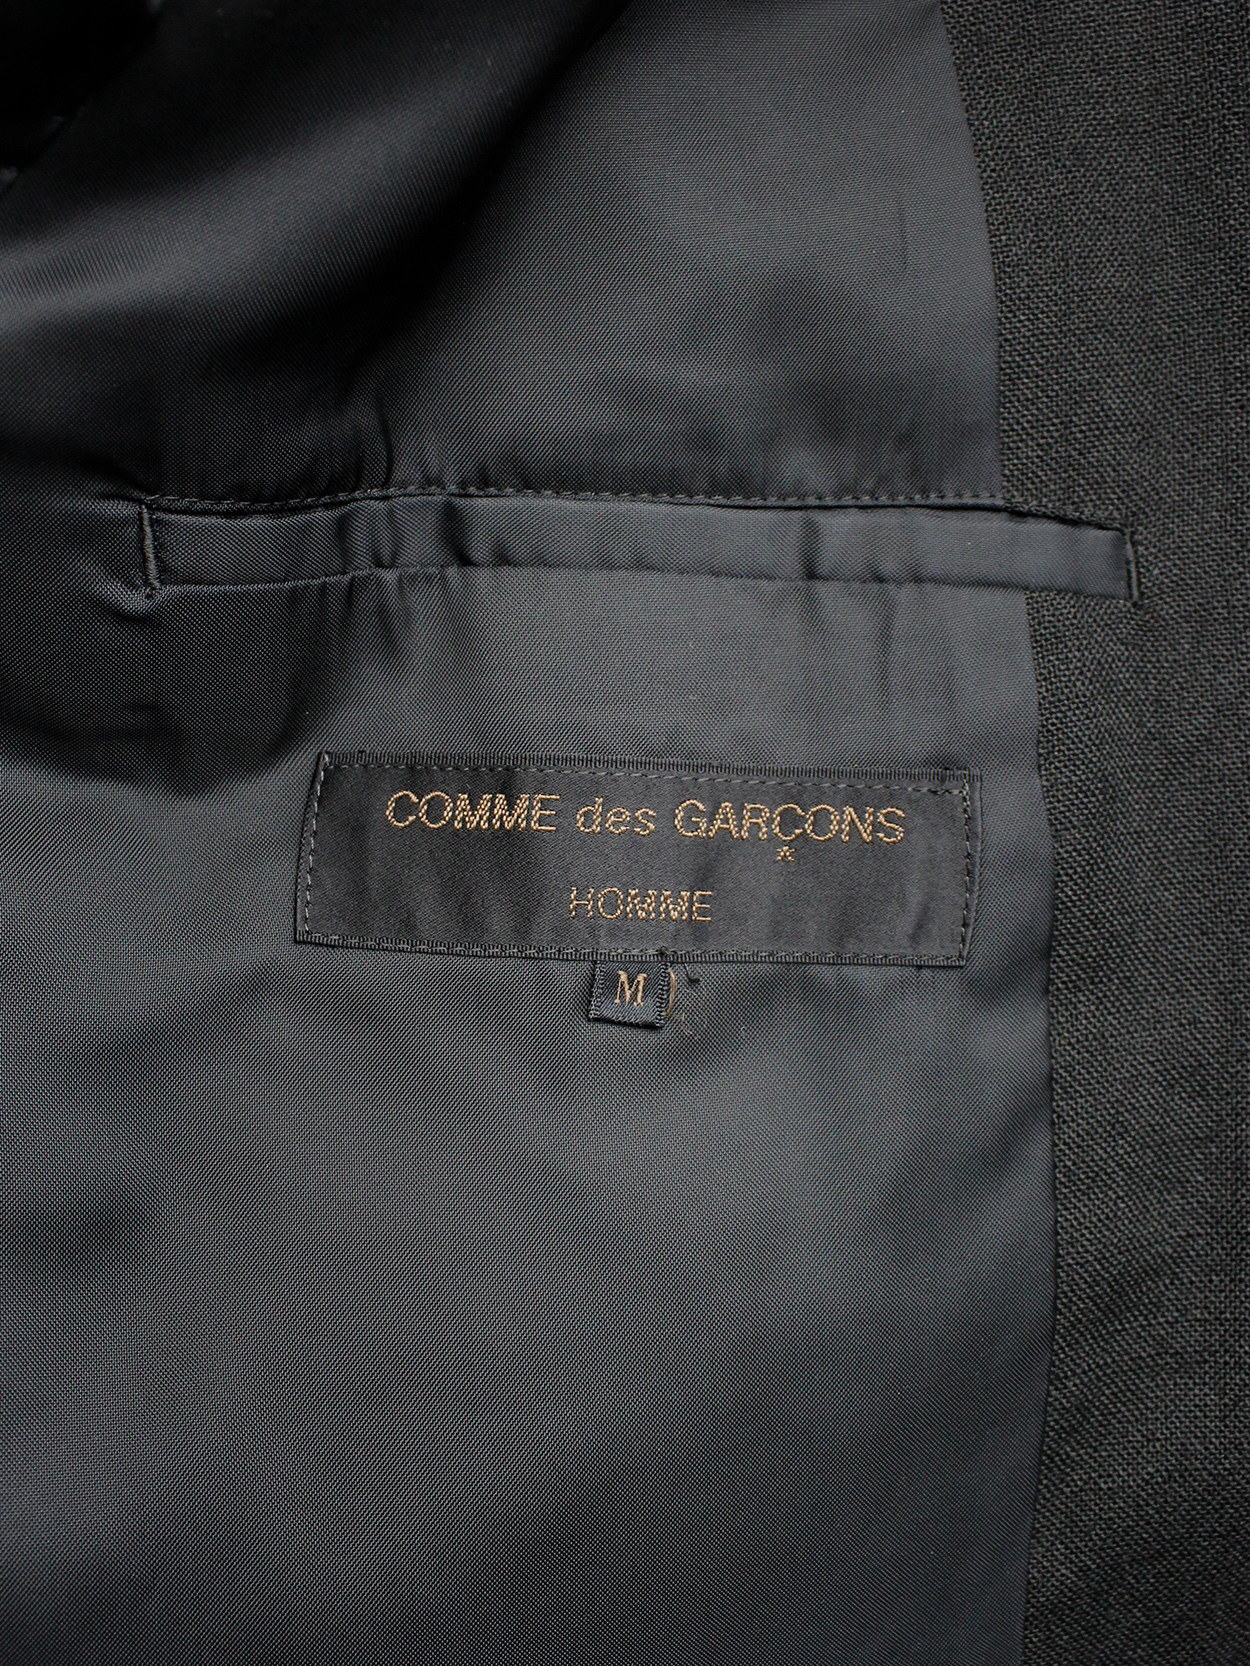 Comme des Garçons Homme black five-button blazer with 3 different front ...